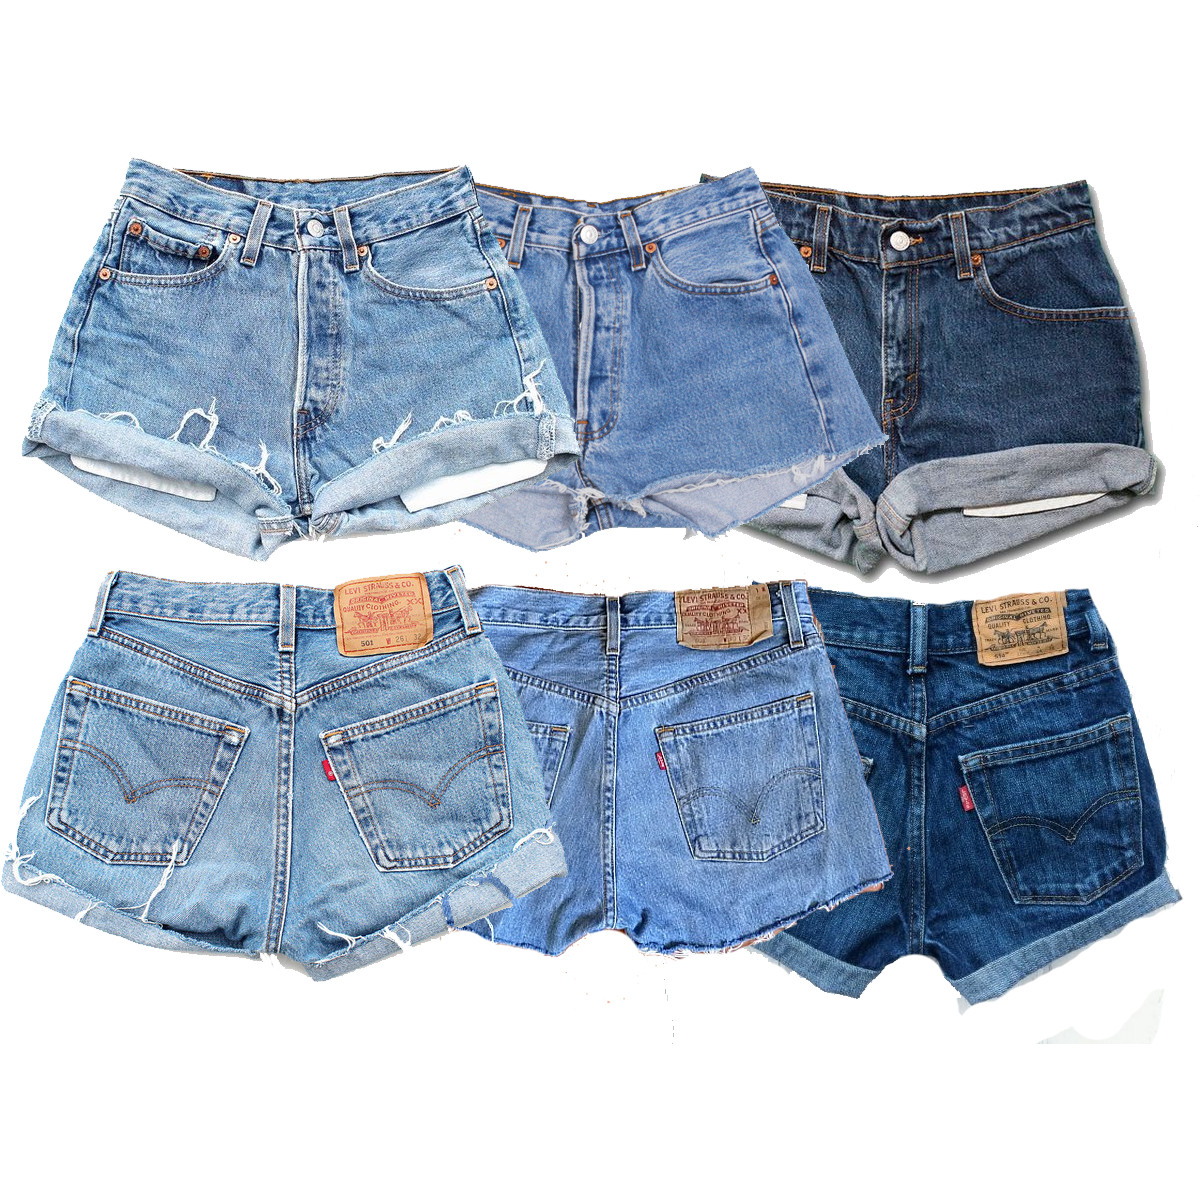 Vintage Denim Shorts Wholesale